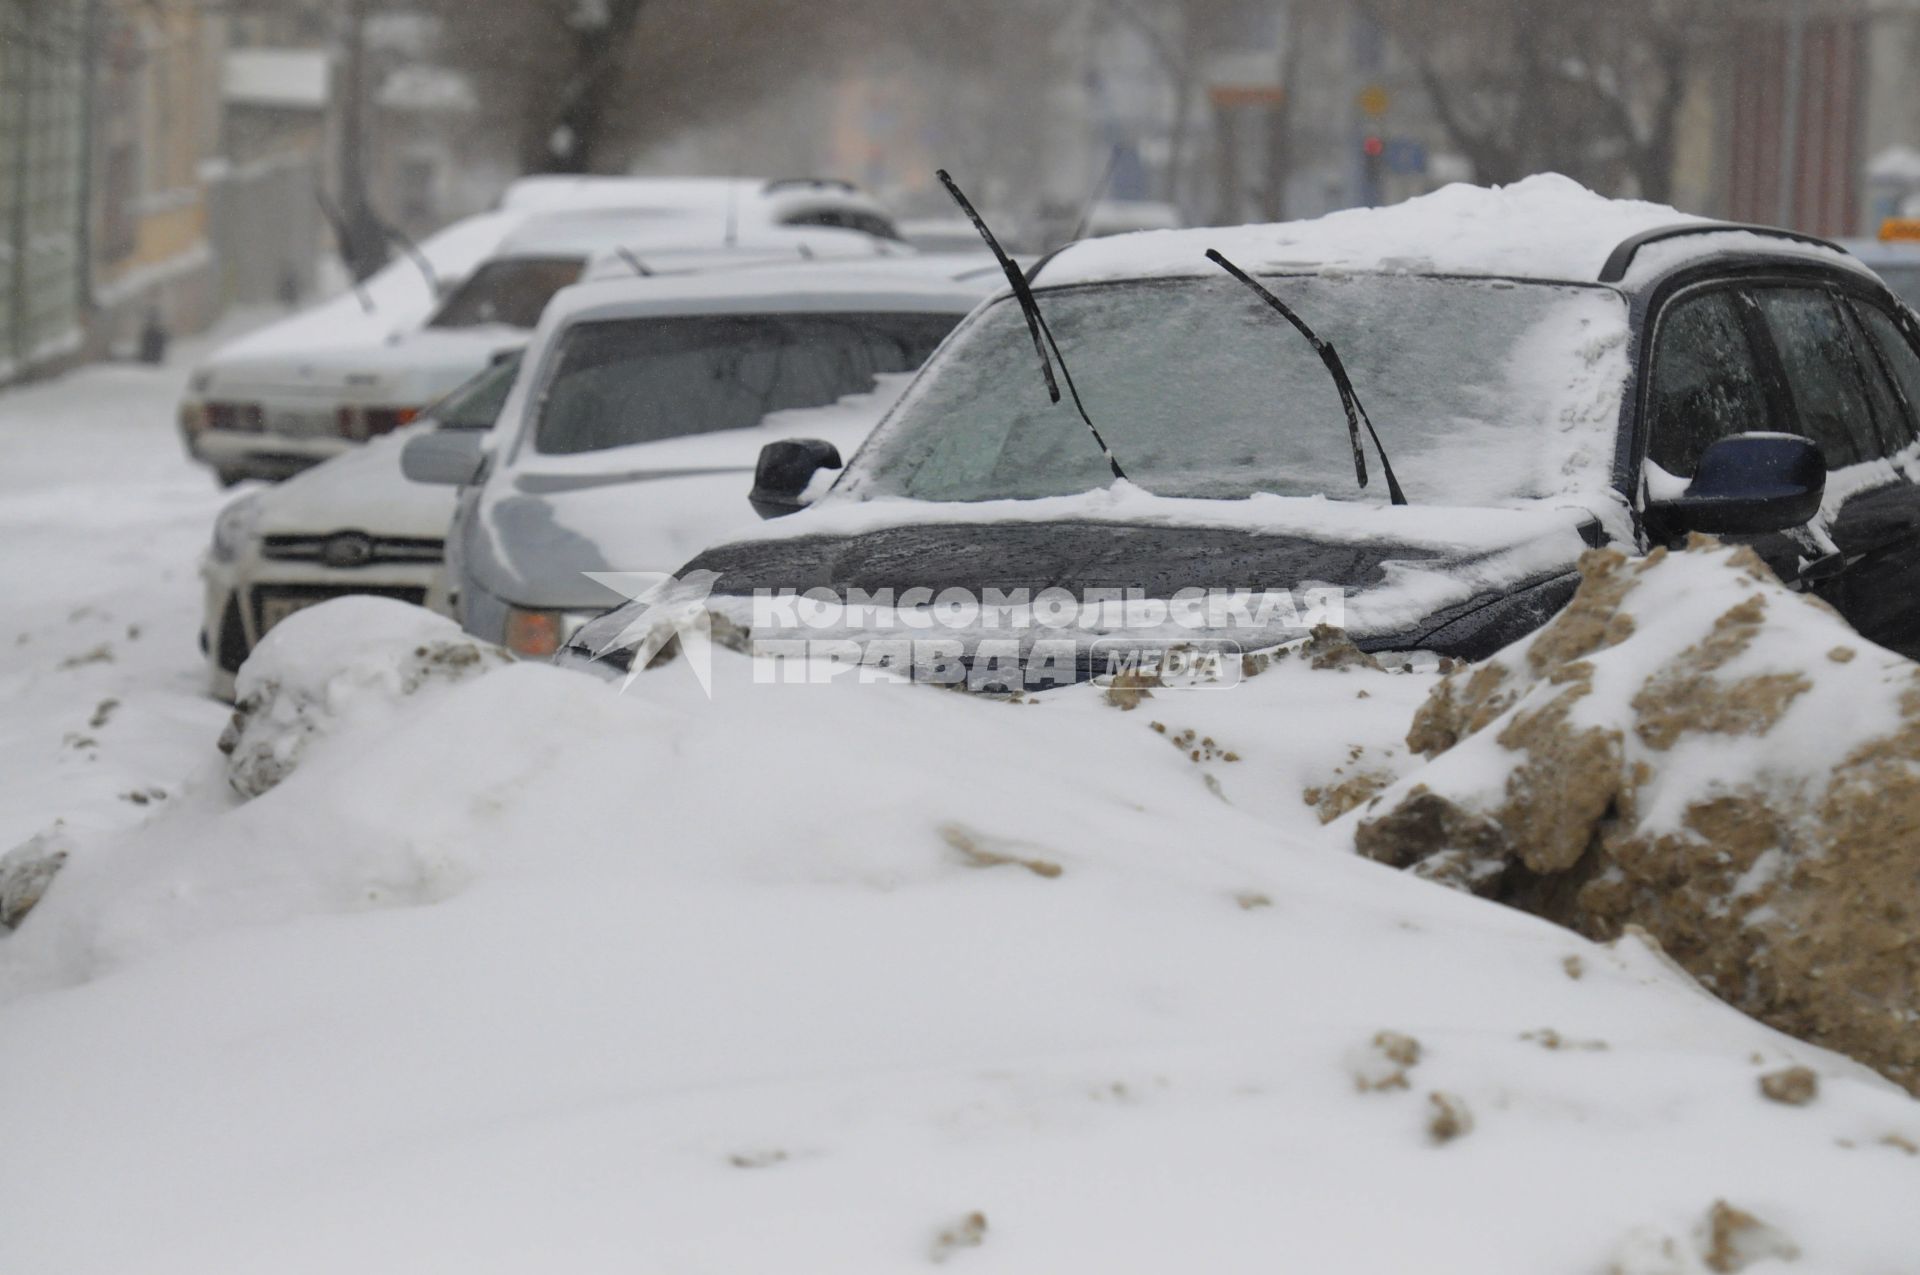 Последствия снегопада. На снимке: автомобильные дворники на заснеженной машине